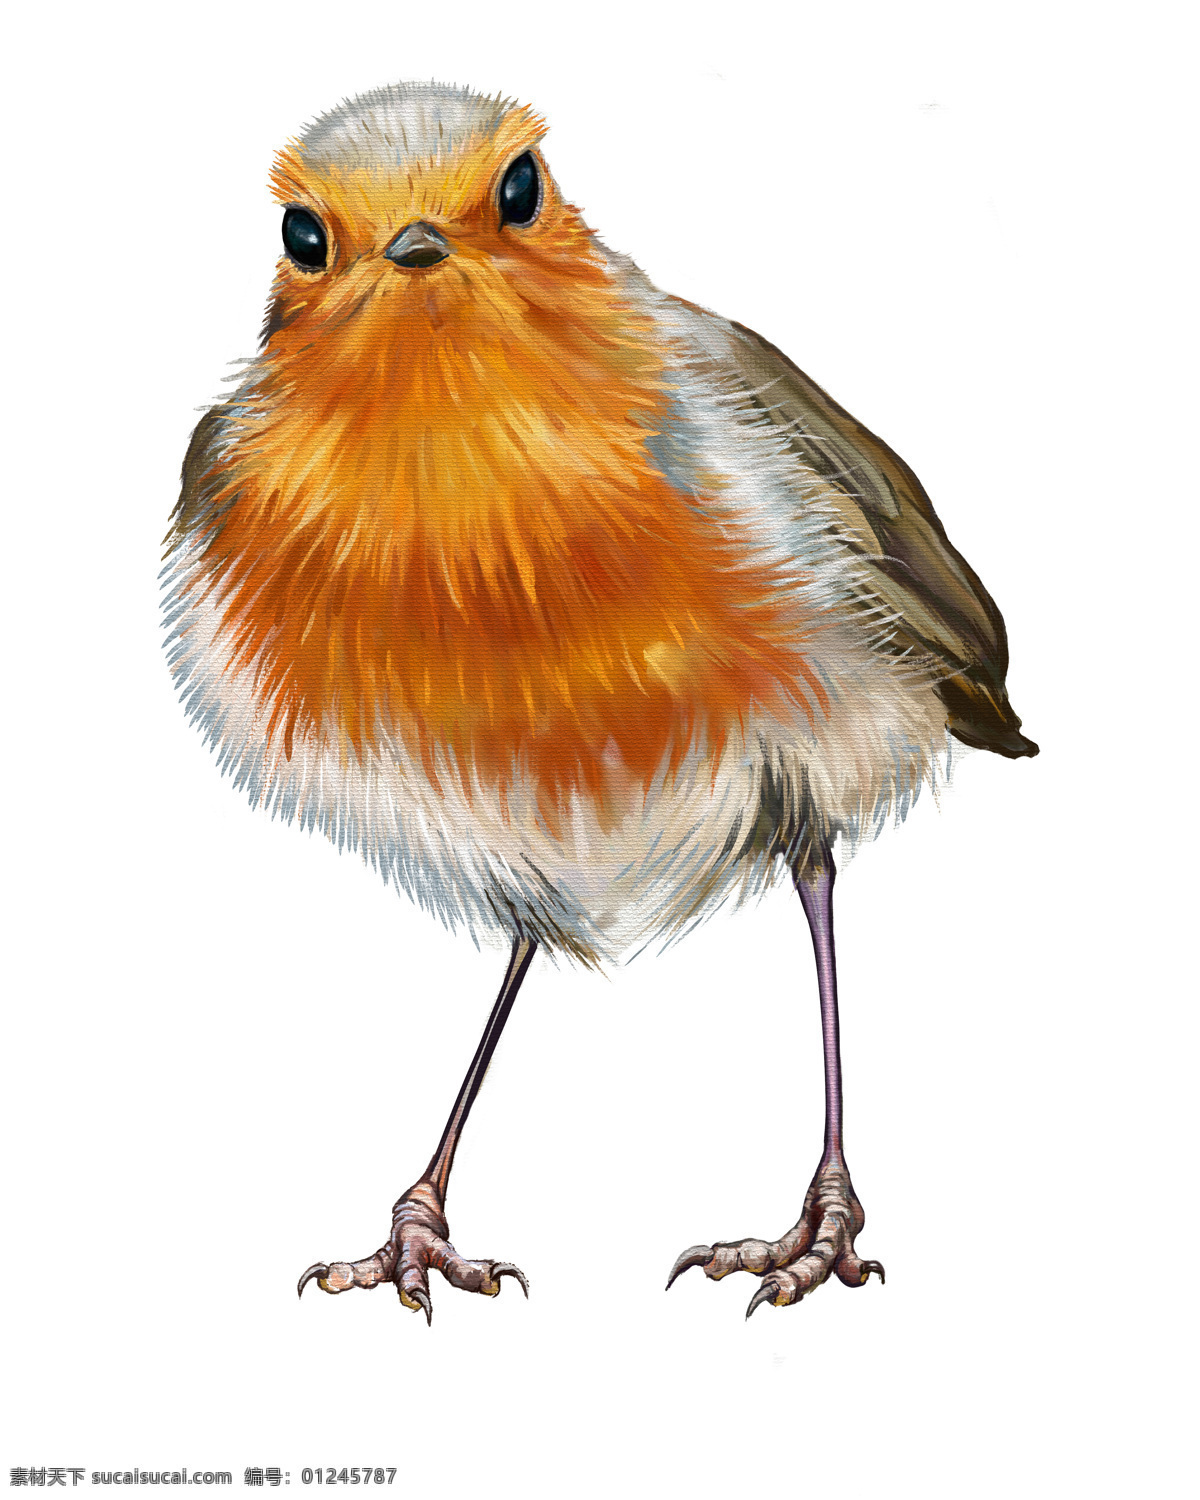 小鸟油画插画 小鸟 动物插画 矢量动物 动物油画 绘画艺术 鸟类插画 陆地动物 生物世界 白色